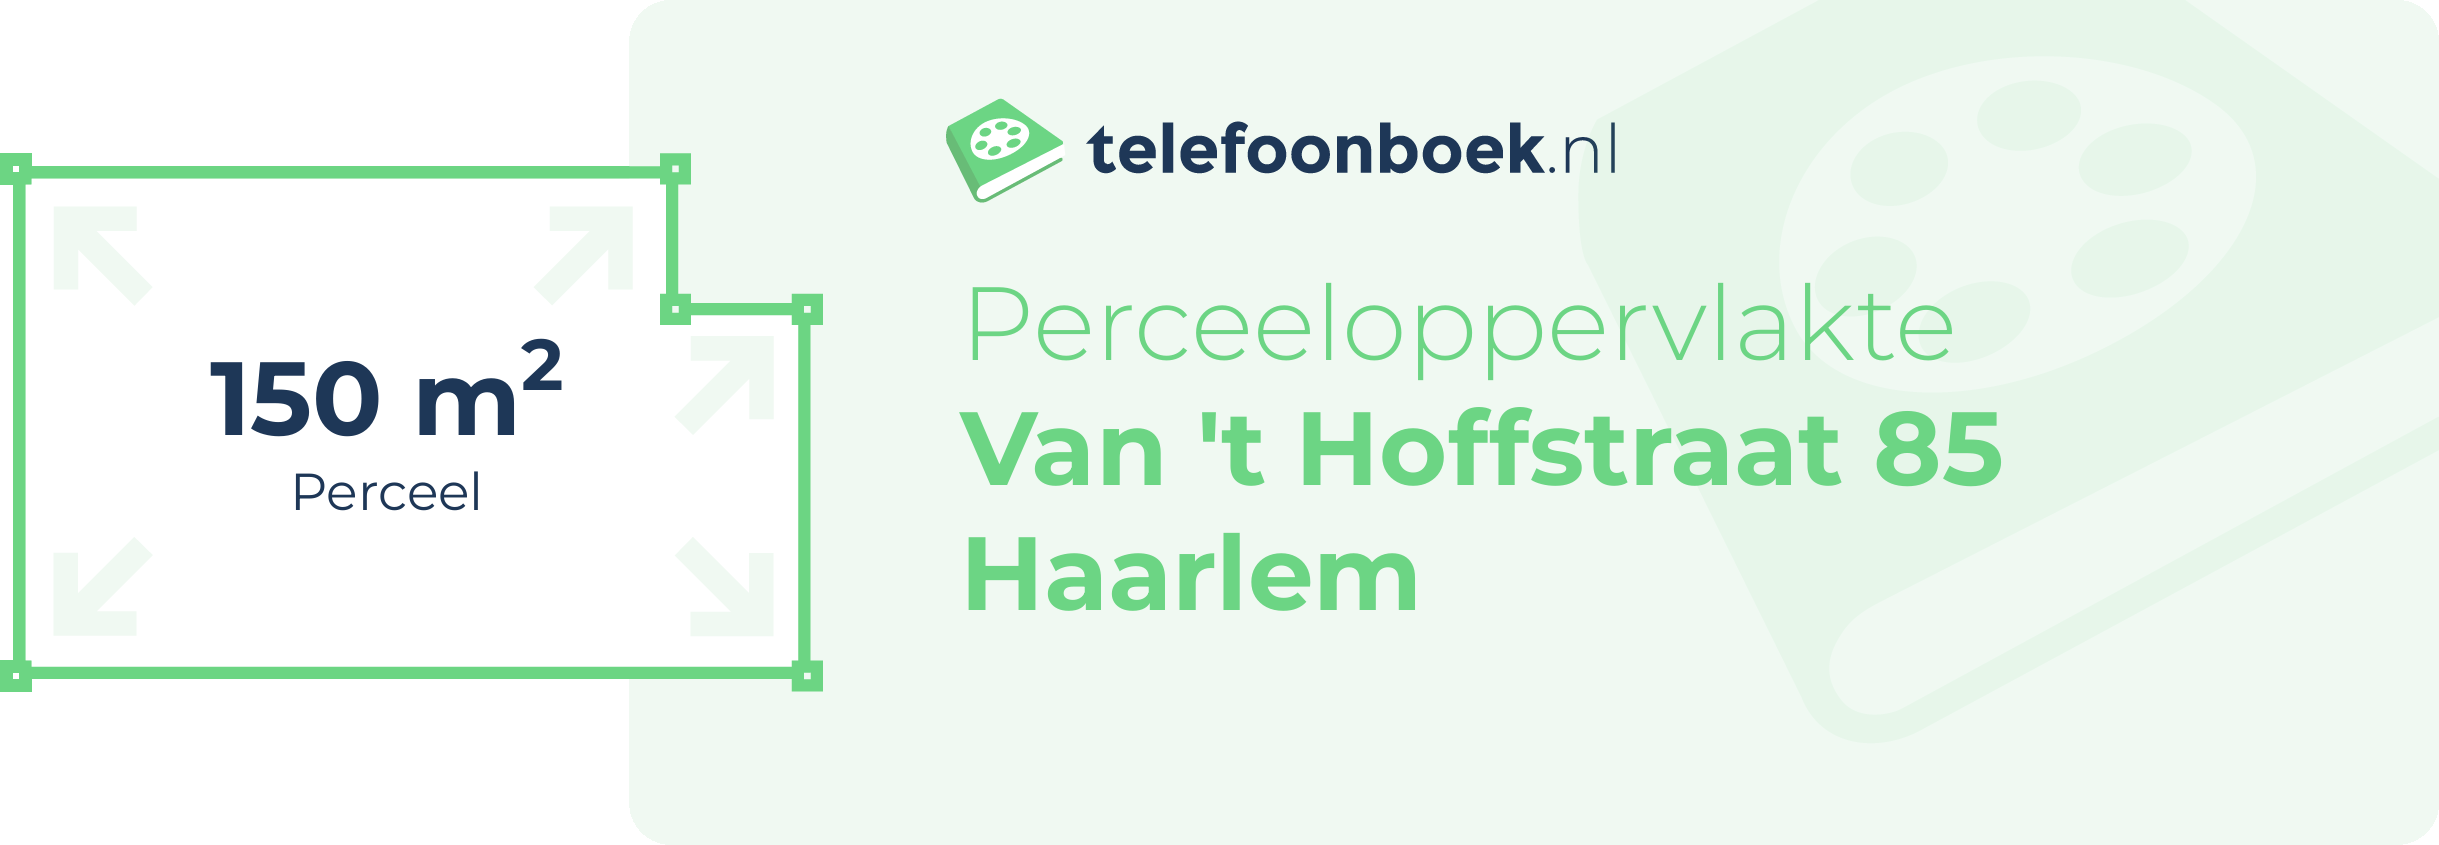 Perceeloppervlakte Van 't Hoffstraat 85 Haarlem